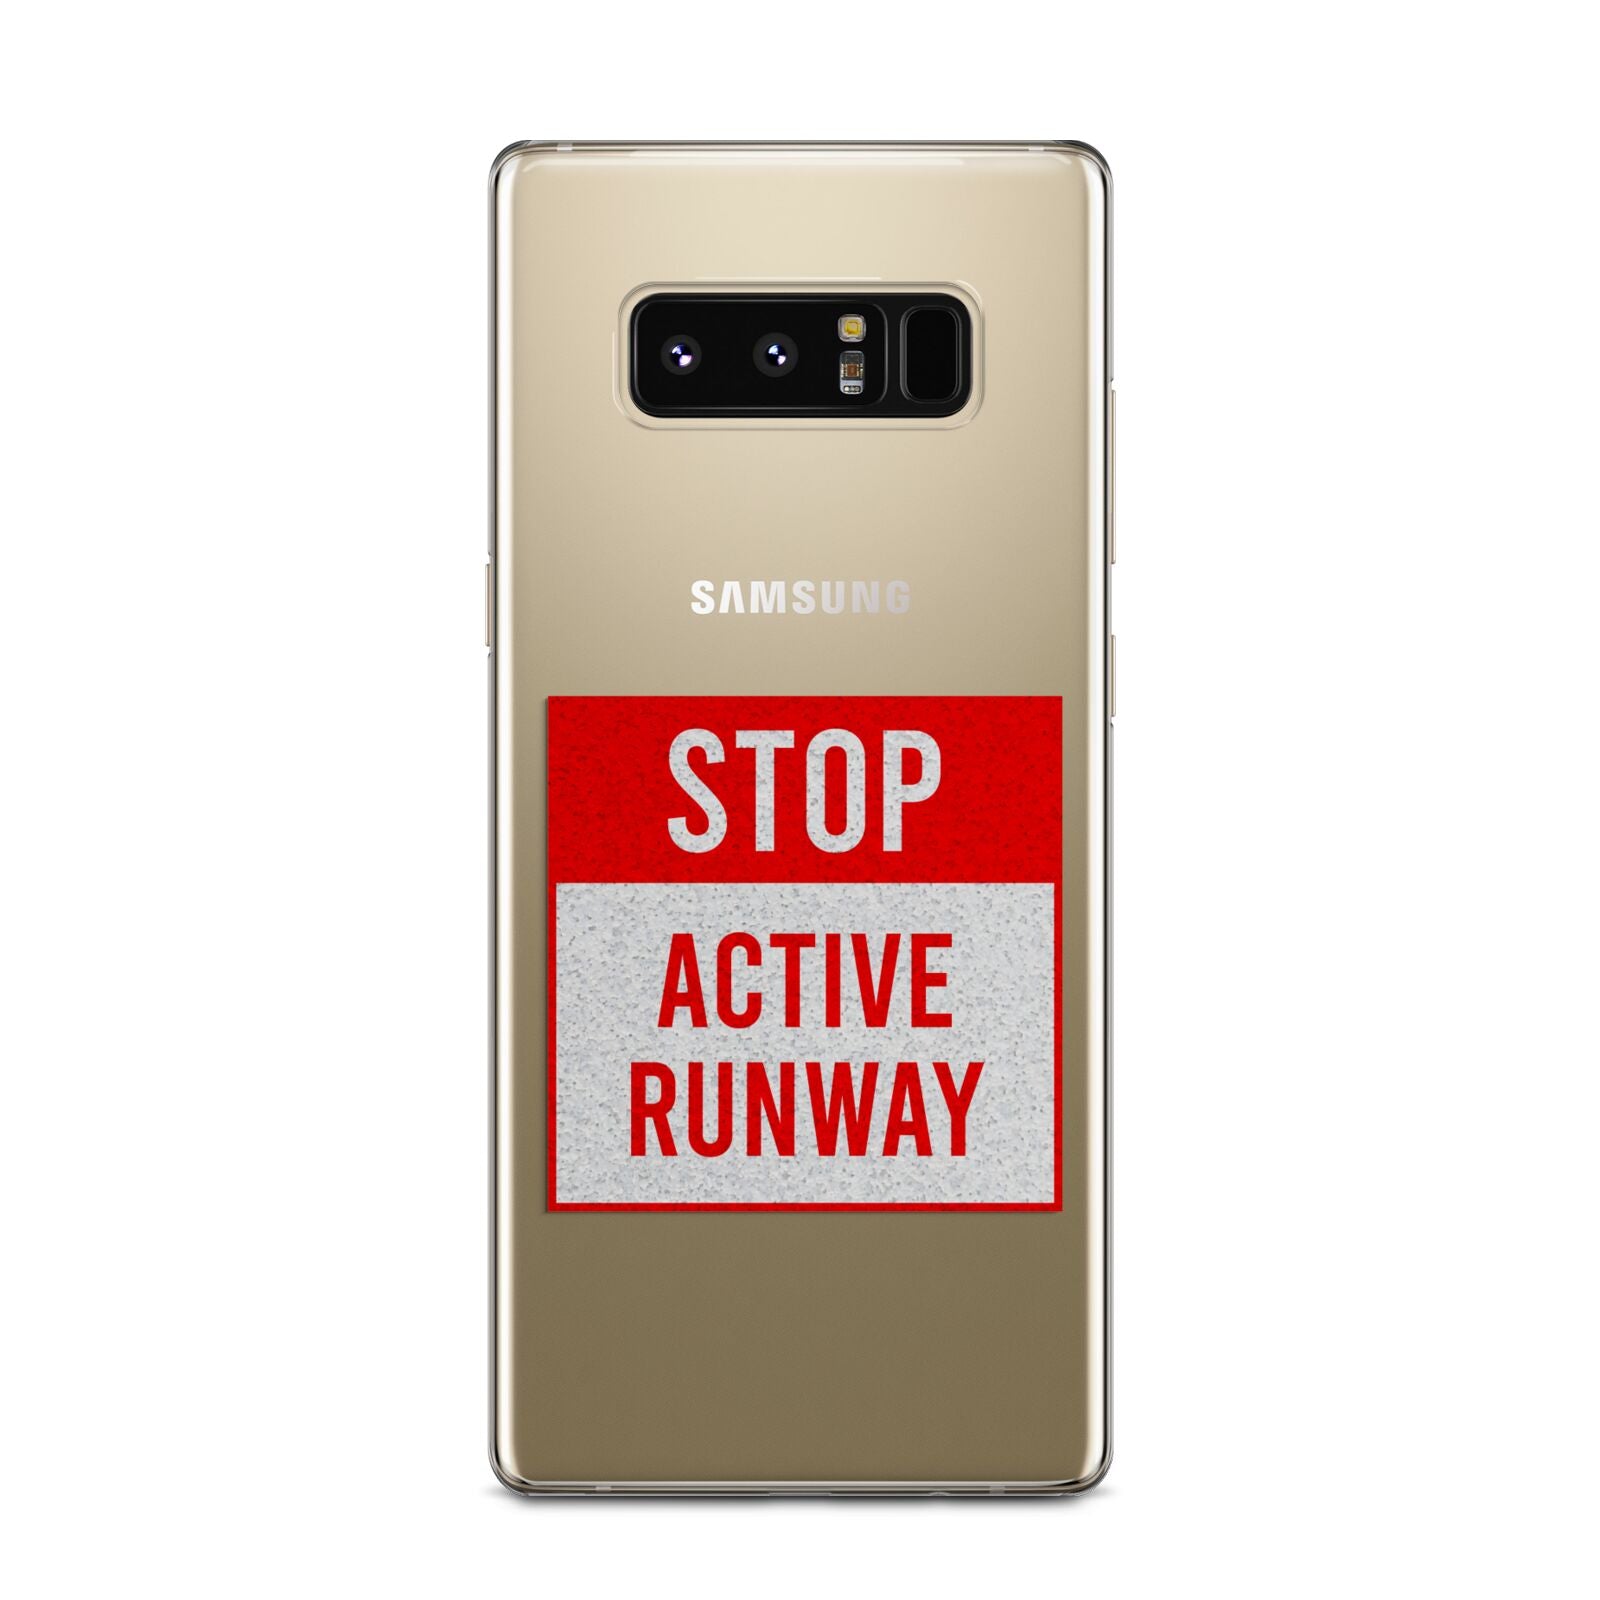 Stop Active Runway Samsung Galaxy Note 8 Case